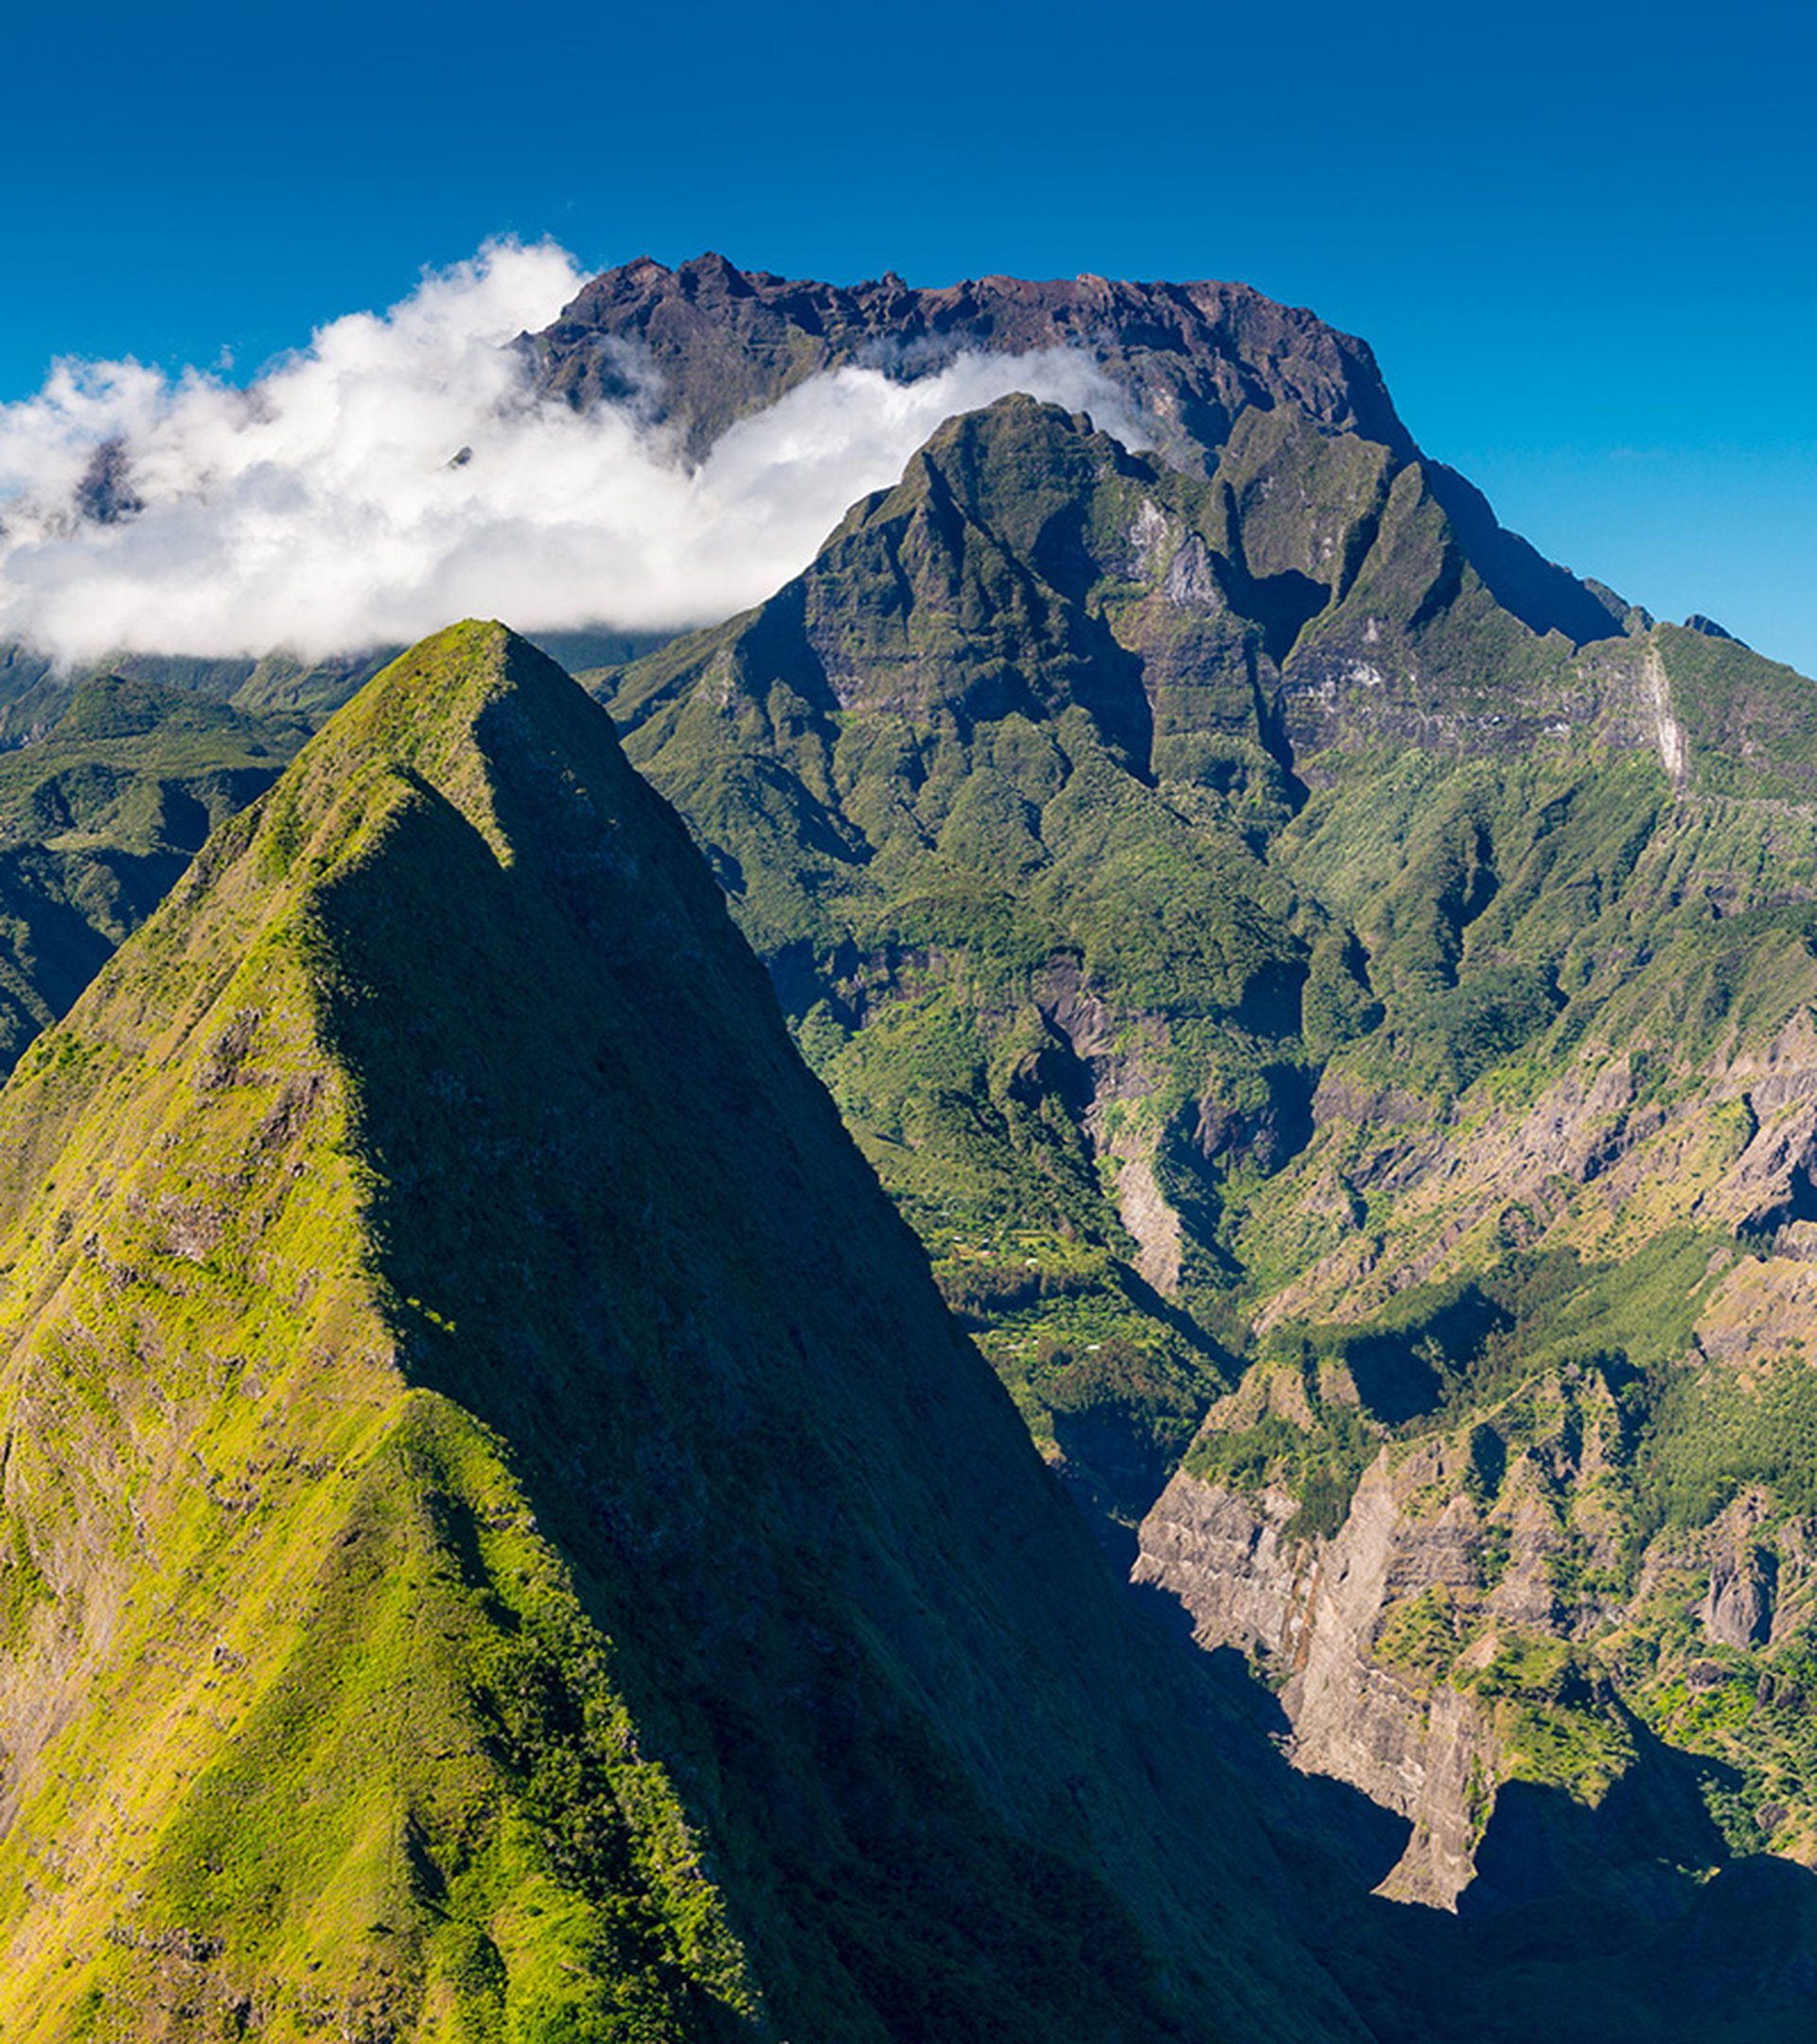 Souvenirs de la Réunion: Que ramenez de son voyage sur l'île